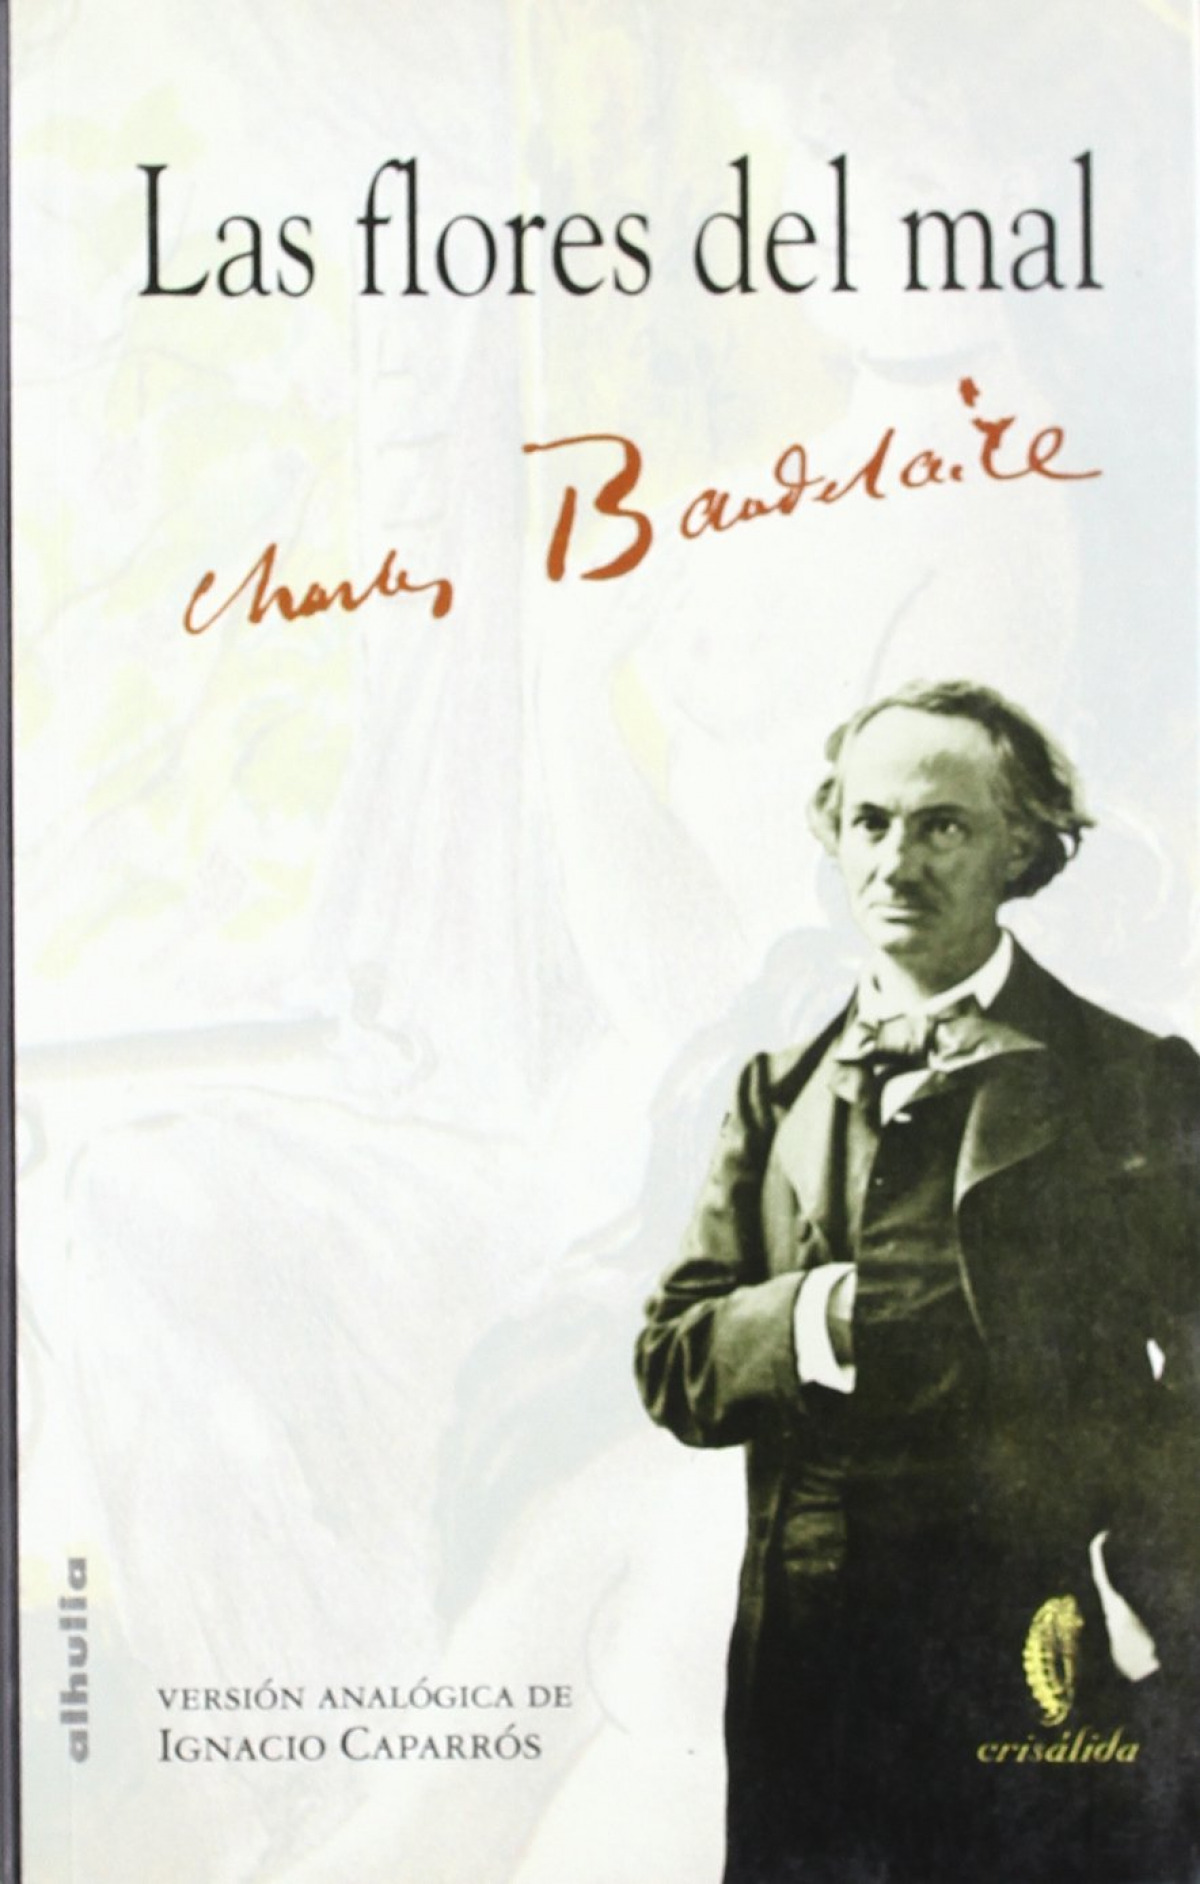 Las flores del mal - Ignacio Caparrós - Charles Baudelaire